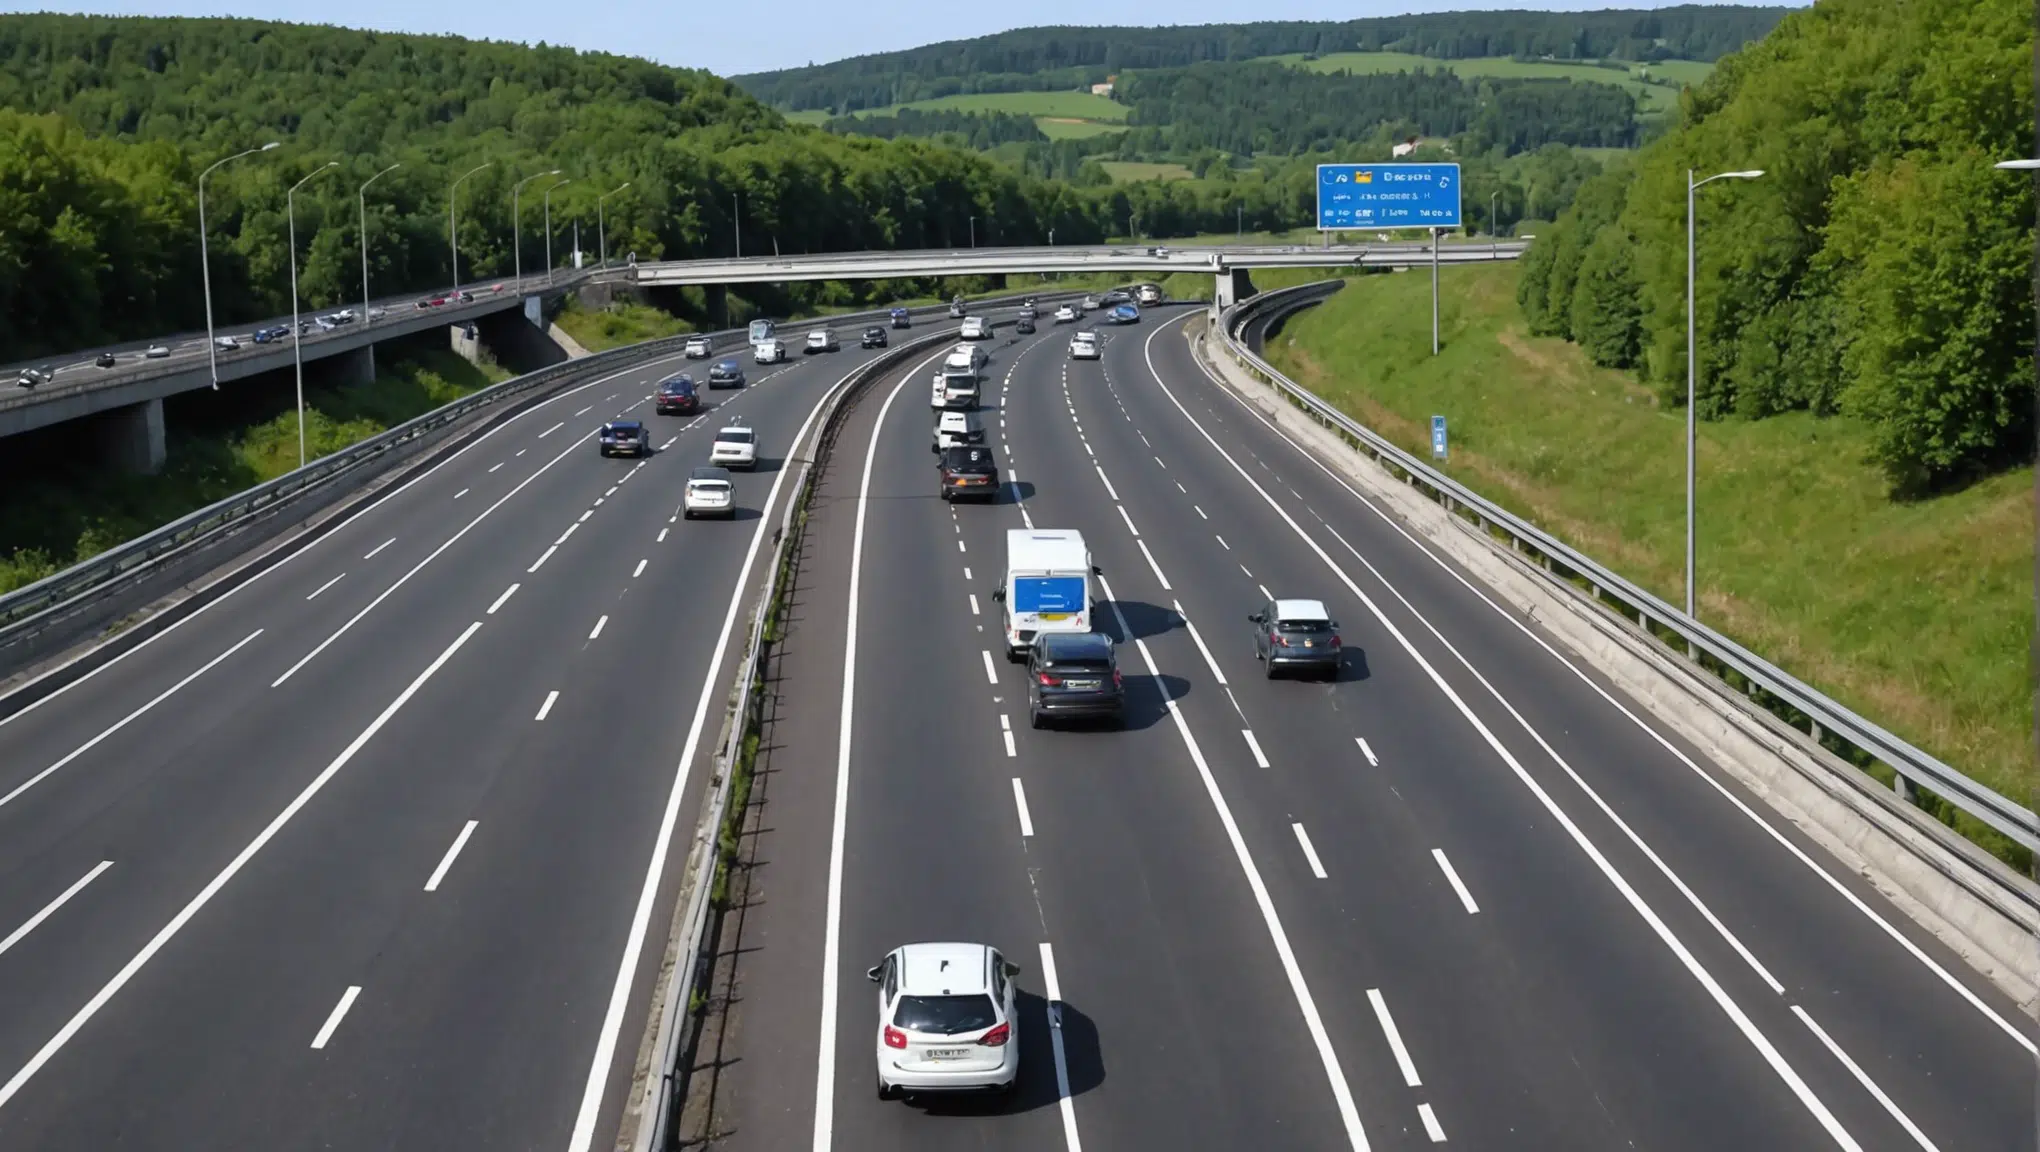 suivez en temps réel les perturbations de circulation sur l'autoroute a8 avec cette vidéo choc ! découvrez ce qui se passe en direct sur la route.